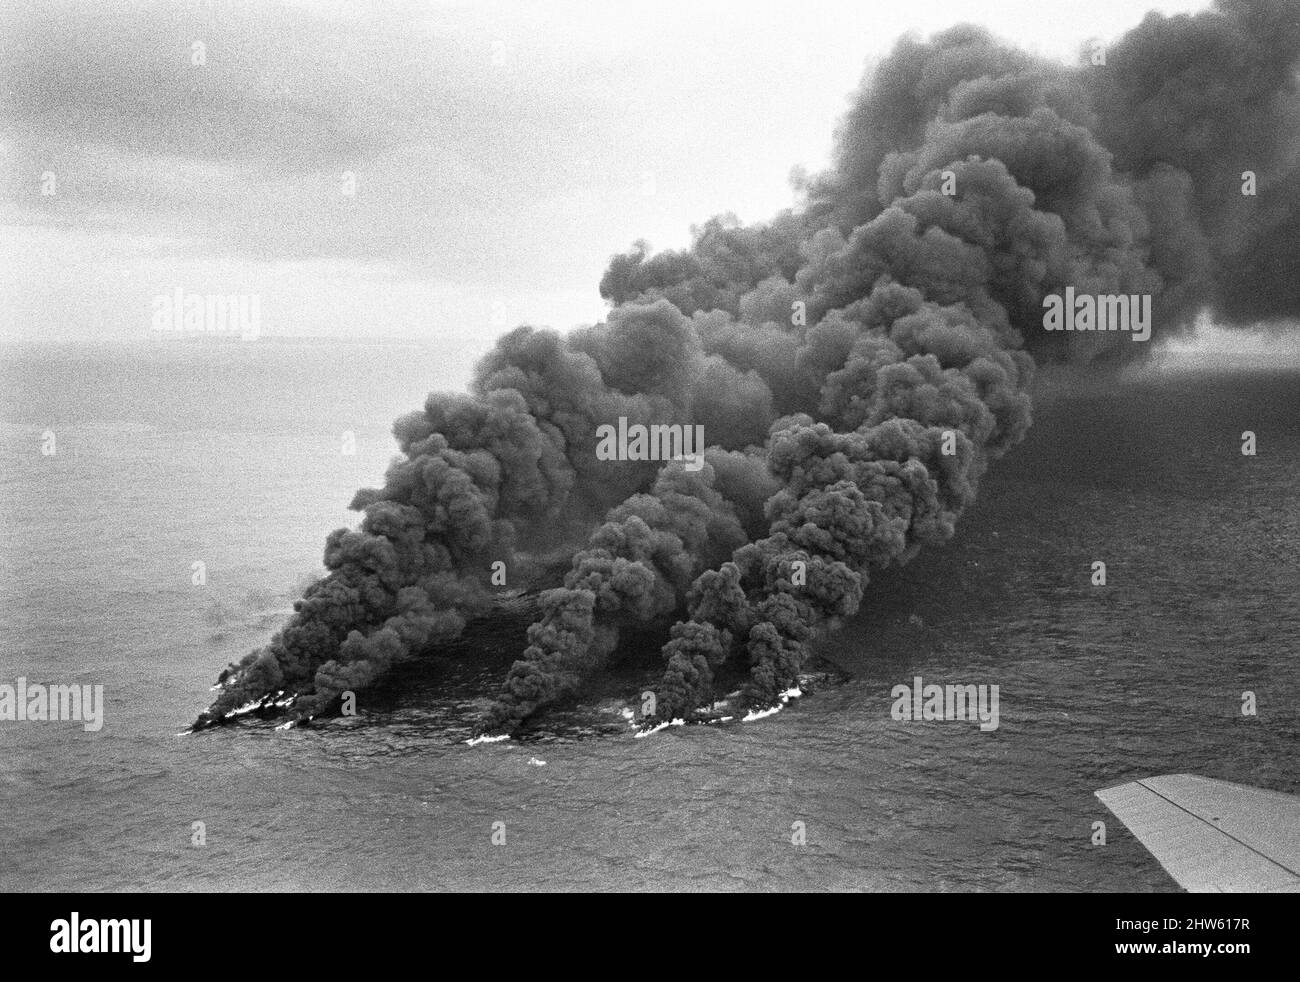 Le 18th mars 1967, le pétrolier Torrey Canyon sur la route de Milford Haven s'est échoué sur Pollard Rock sur le récif Seven Stones, près de Lands End, Cornwall dans les heures et les jours qui ont suivi, de nombreuses tentatives pour faire flotter le navire hors du récif ont échoué. Après que les tentatives de déplacer le navire ont échoué, le navire a commencé à briser la totalité de sa cargaison d'environ 119 000 tonnes de pétrole brut du Koweït des chars brisés du navire frappé au cours des 10 jours suivants. Notre photo montre: Le pétrole flamboyant sur la mer après Blackburn Buccaneer avion de la flotte Air Arm basé à RNAS Lossiemo Banque D'Images